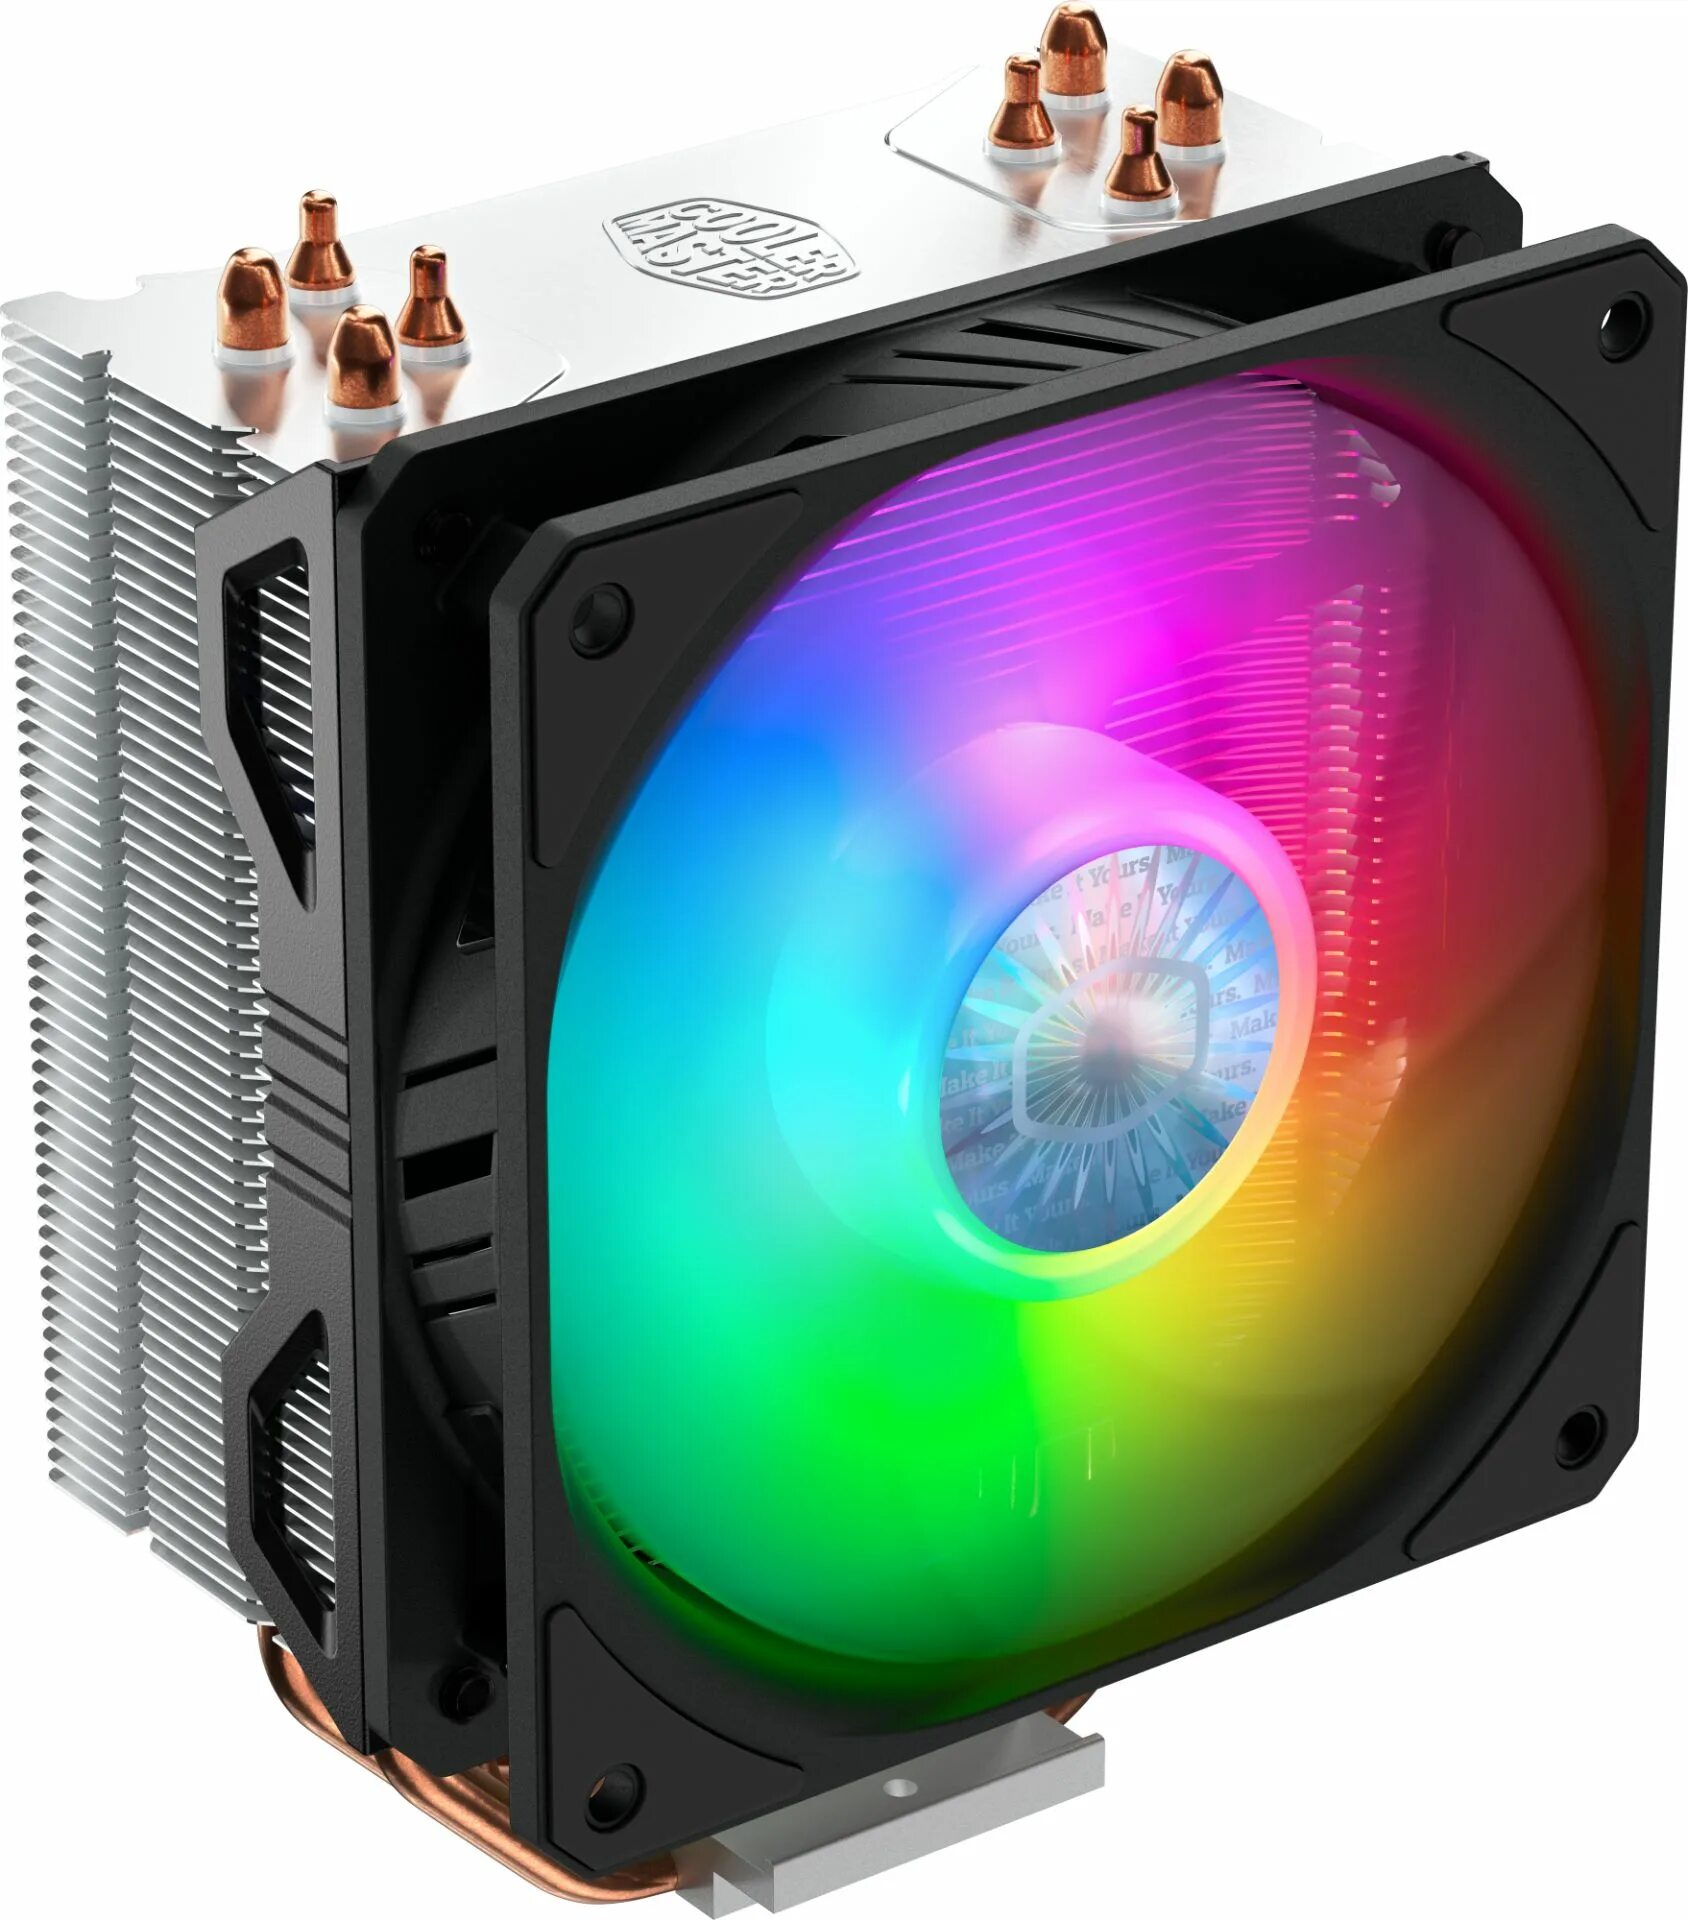 Rr master. Coolermaster Hyper 212 Spectrum. Cooler Master 212 Spectrum. Cooler Master кулер для процессора 1150. Кулер для процессора Coolermaster Hyper 212 Spectrum v2 4-Pin 150w RGB LGA Intel/AMD RR-2v2l-18pd-r1.